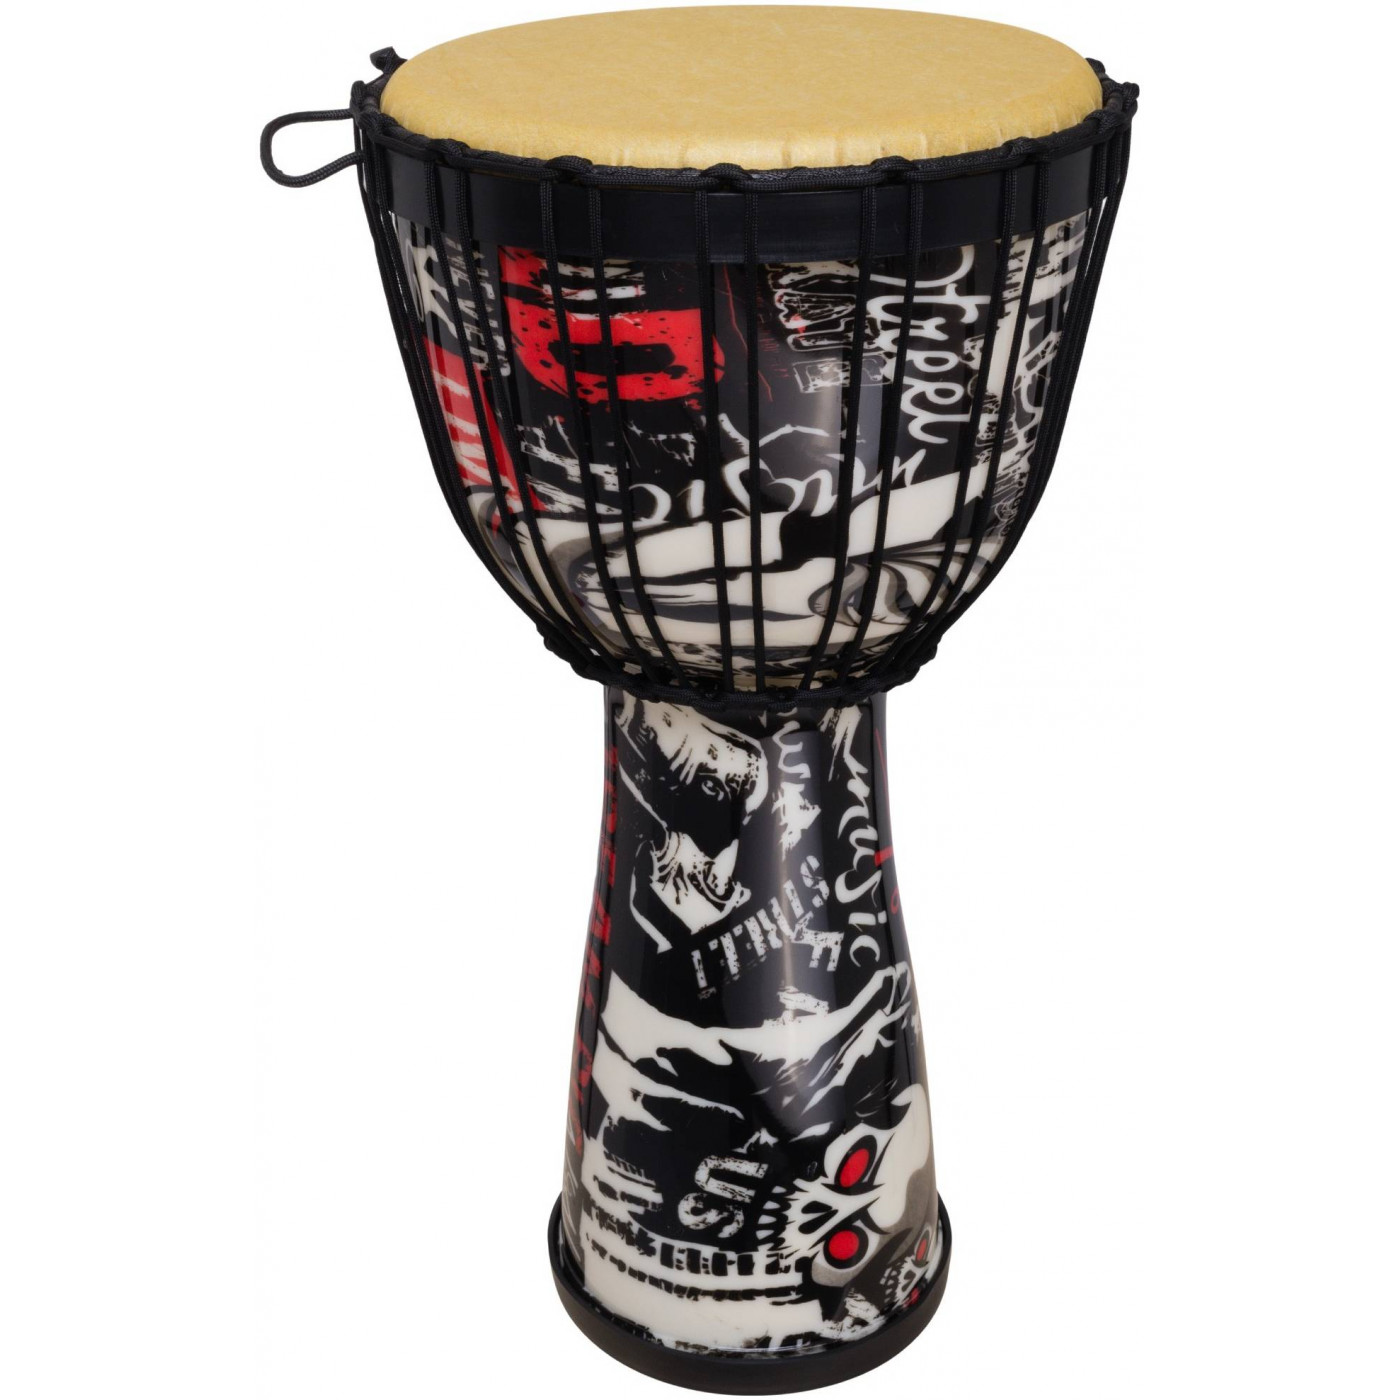 Прочие ударные, перкуссия, народные Terris DPR-10 Black музыкальный инструмент барабан джембе ящерица 14x14x30 см микс